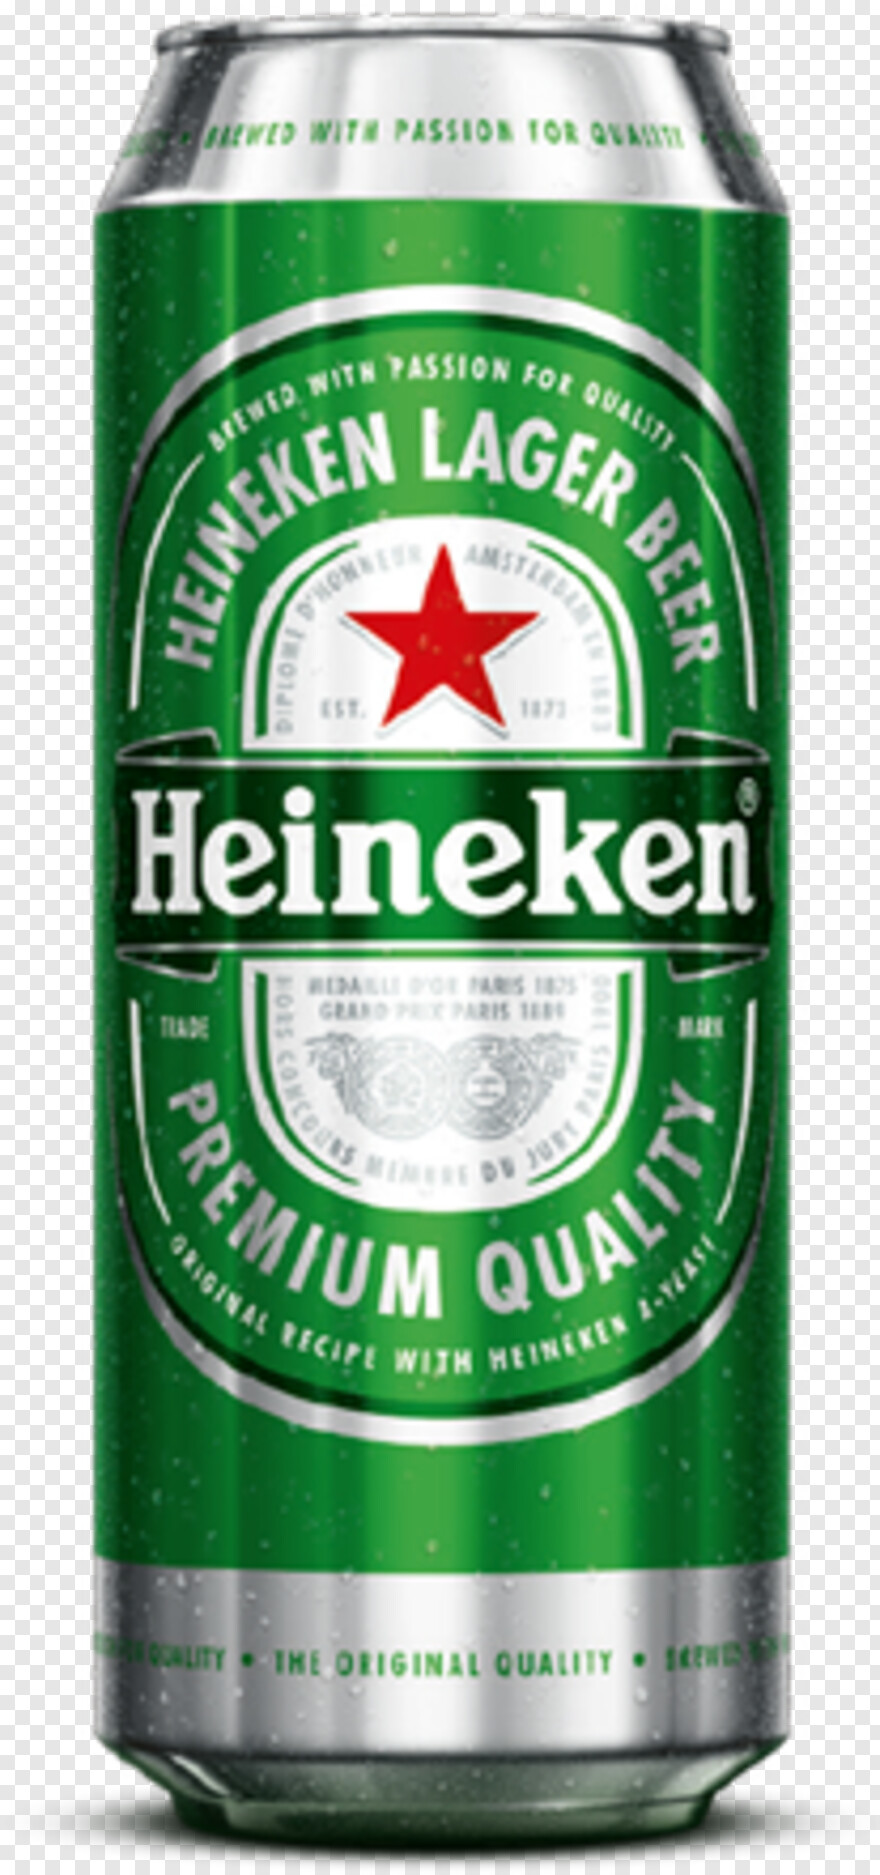 heineken-bottle # 381079